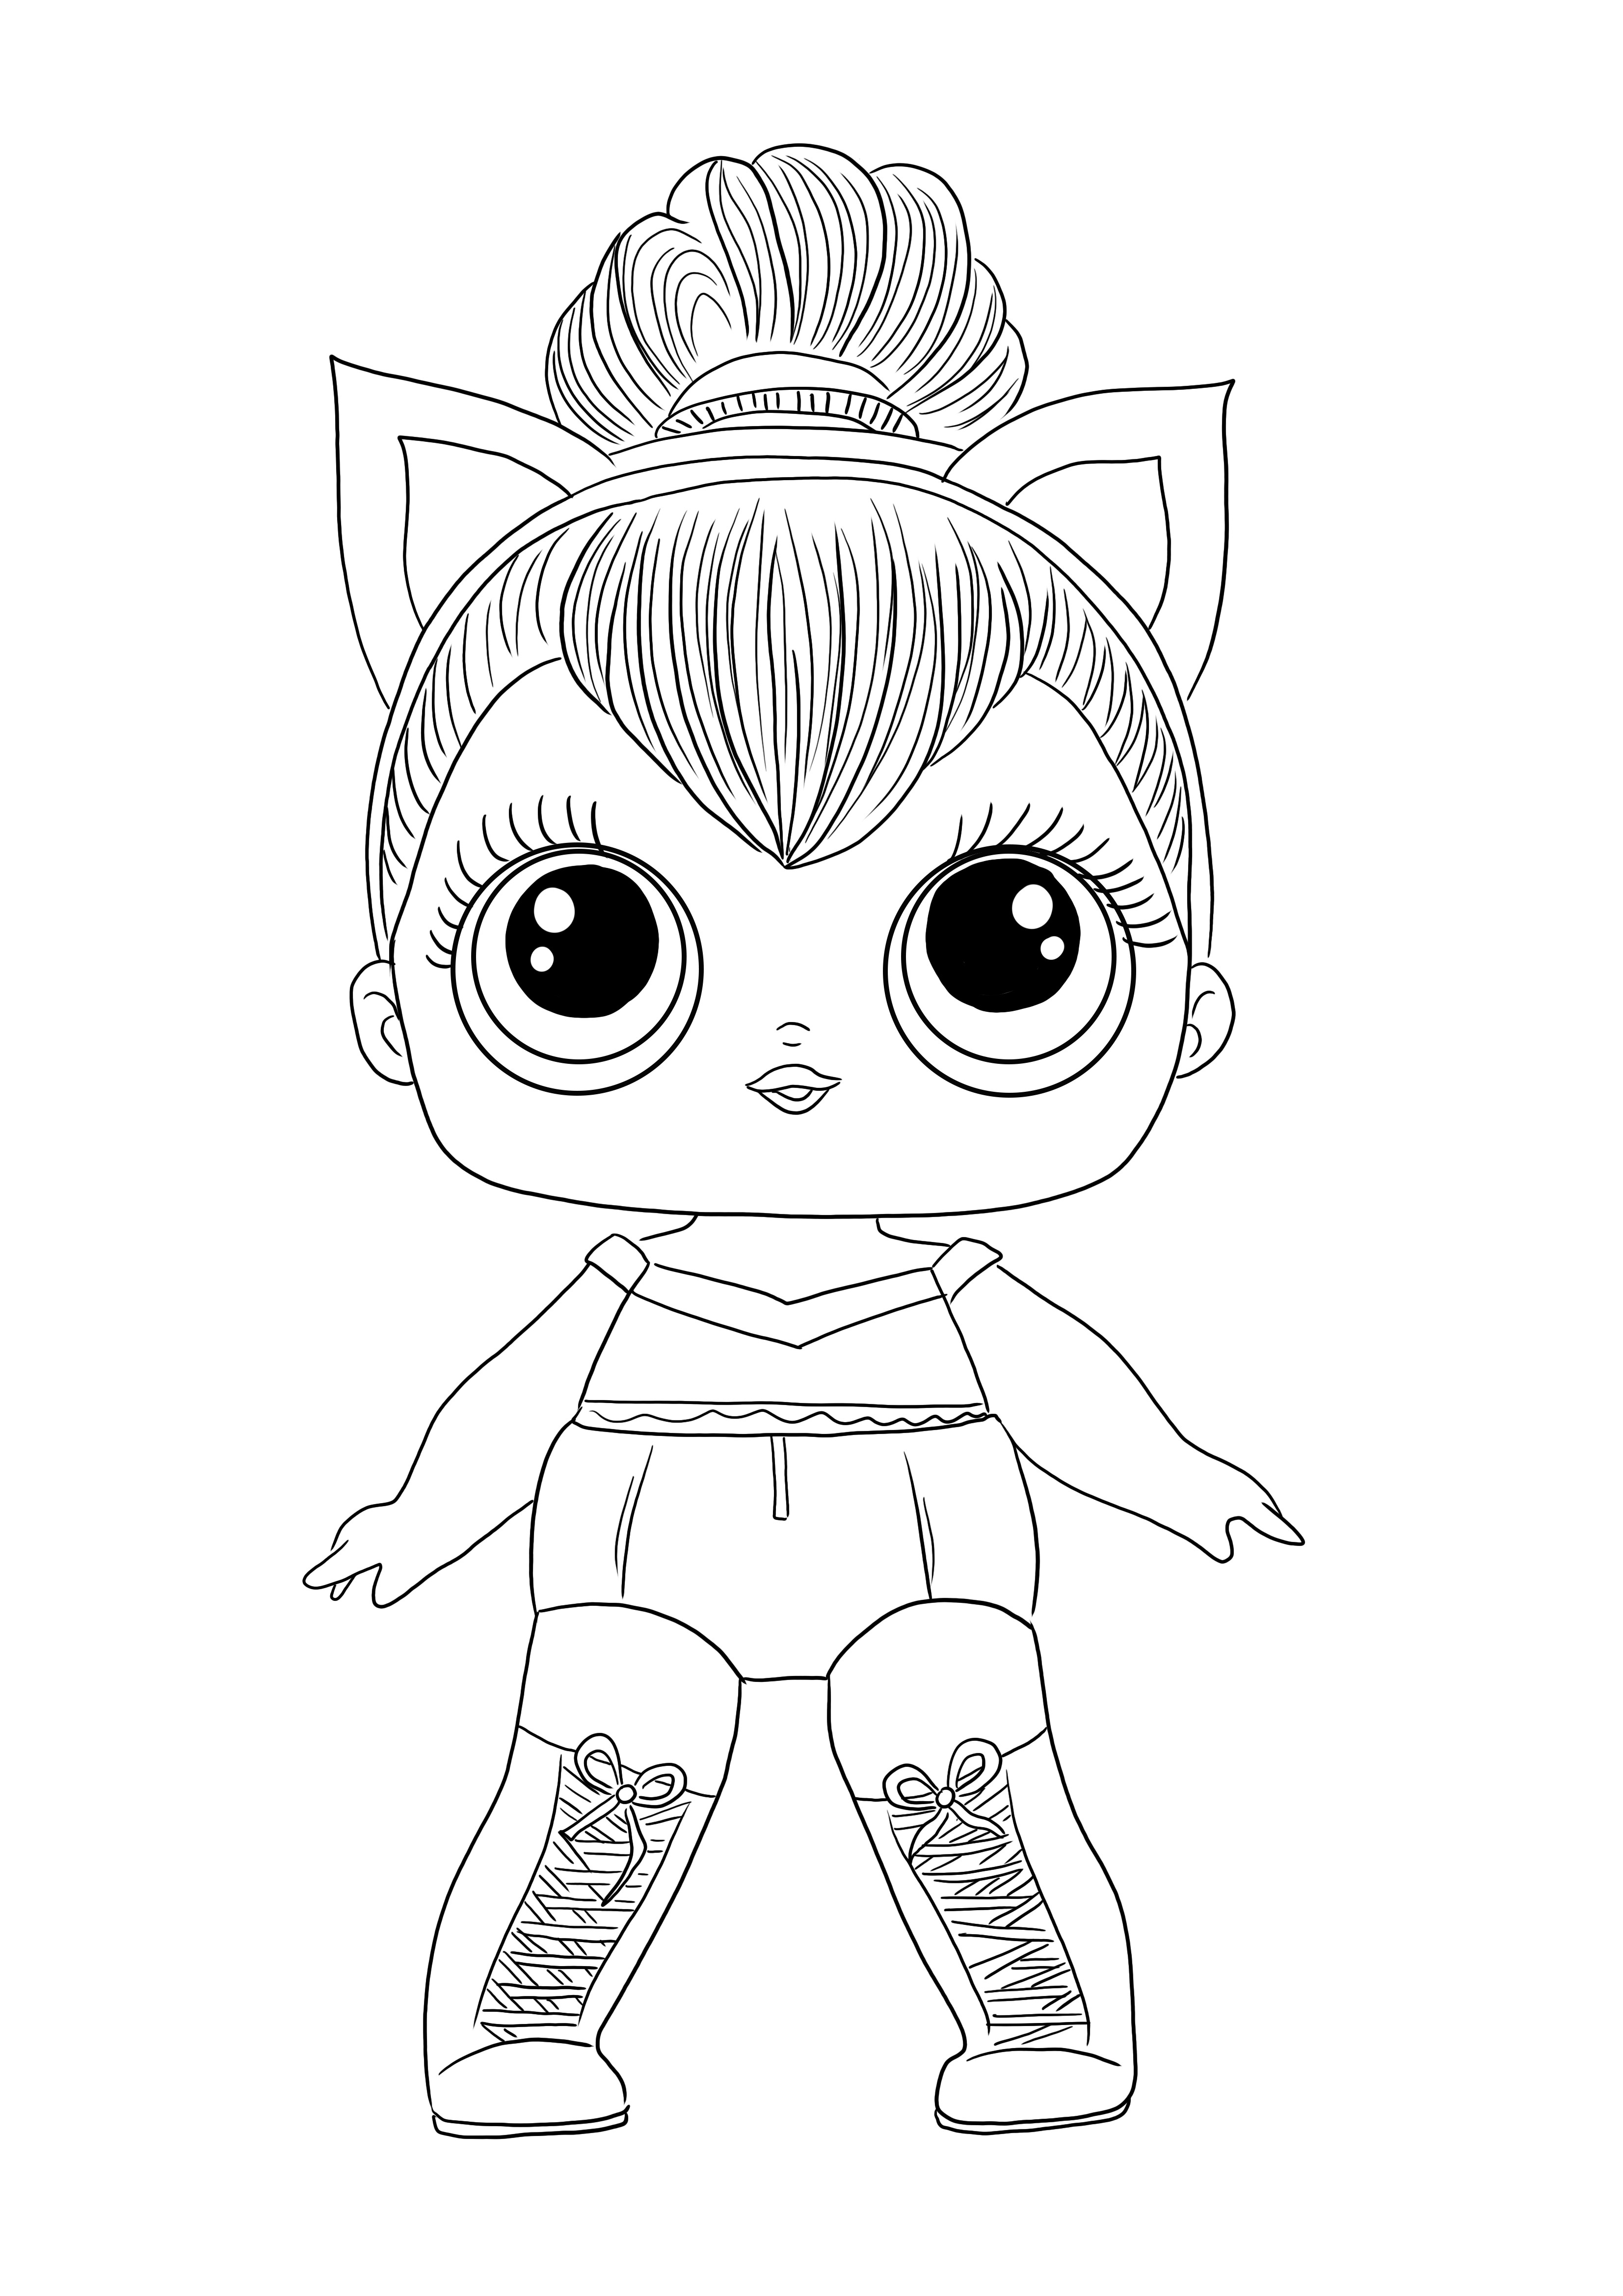 Impressão e coloração gratuitas da imagem LOL Doll Kitty Queen para todas as crianças